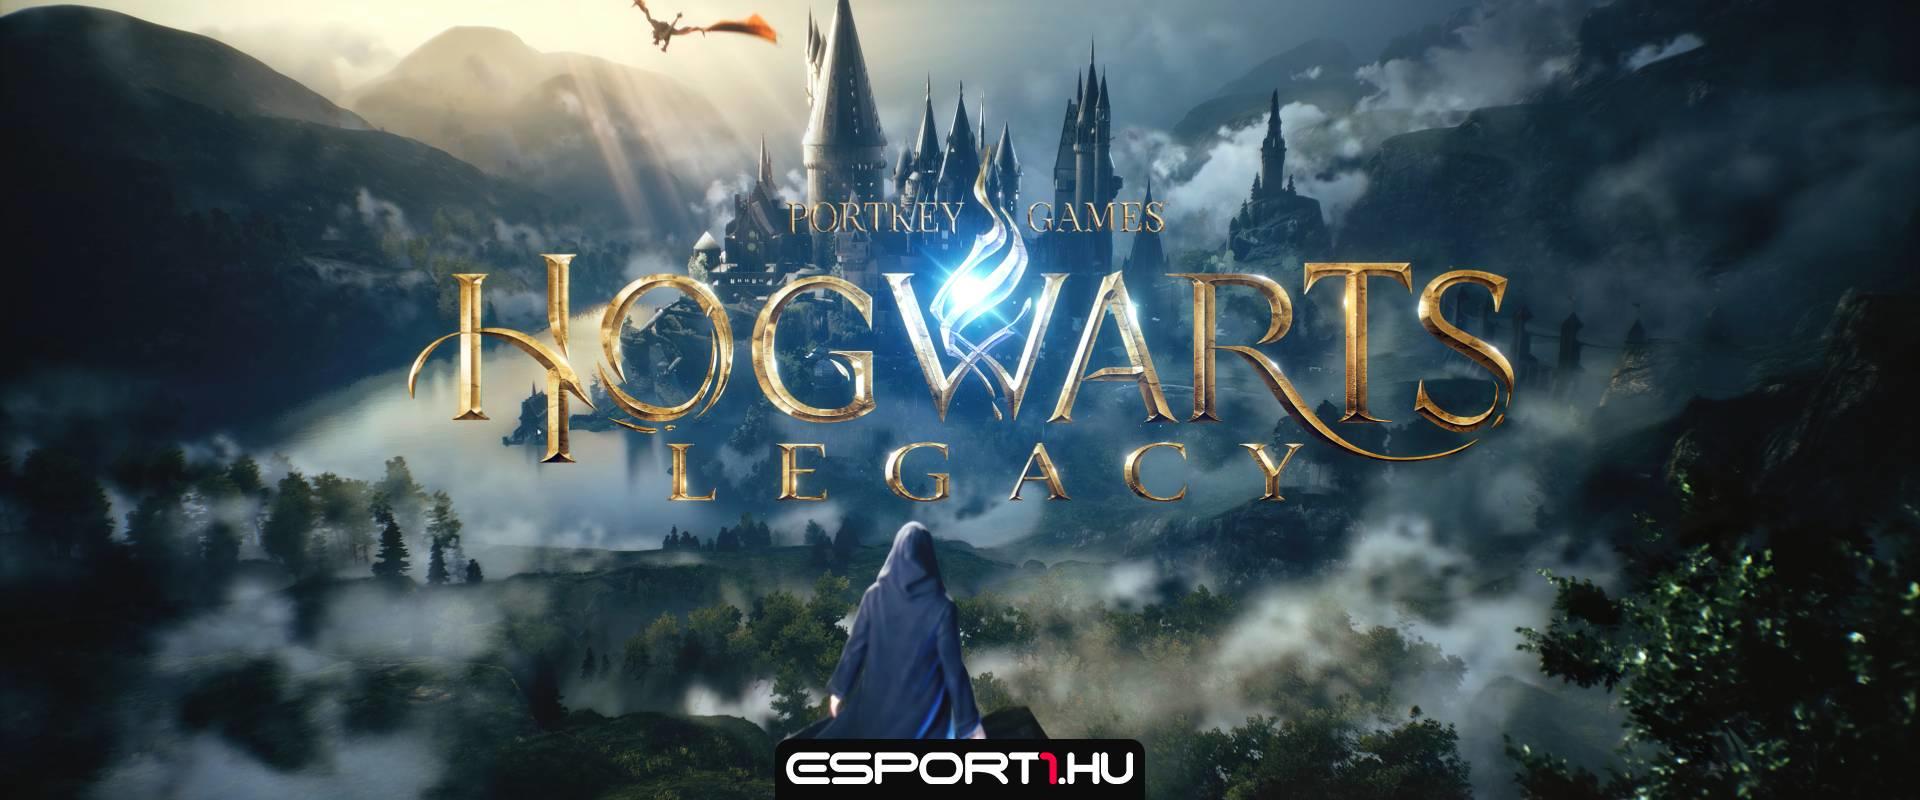 Hogwarts Legacy: Ha minden igaz, már nem kell sokat várni rá